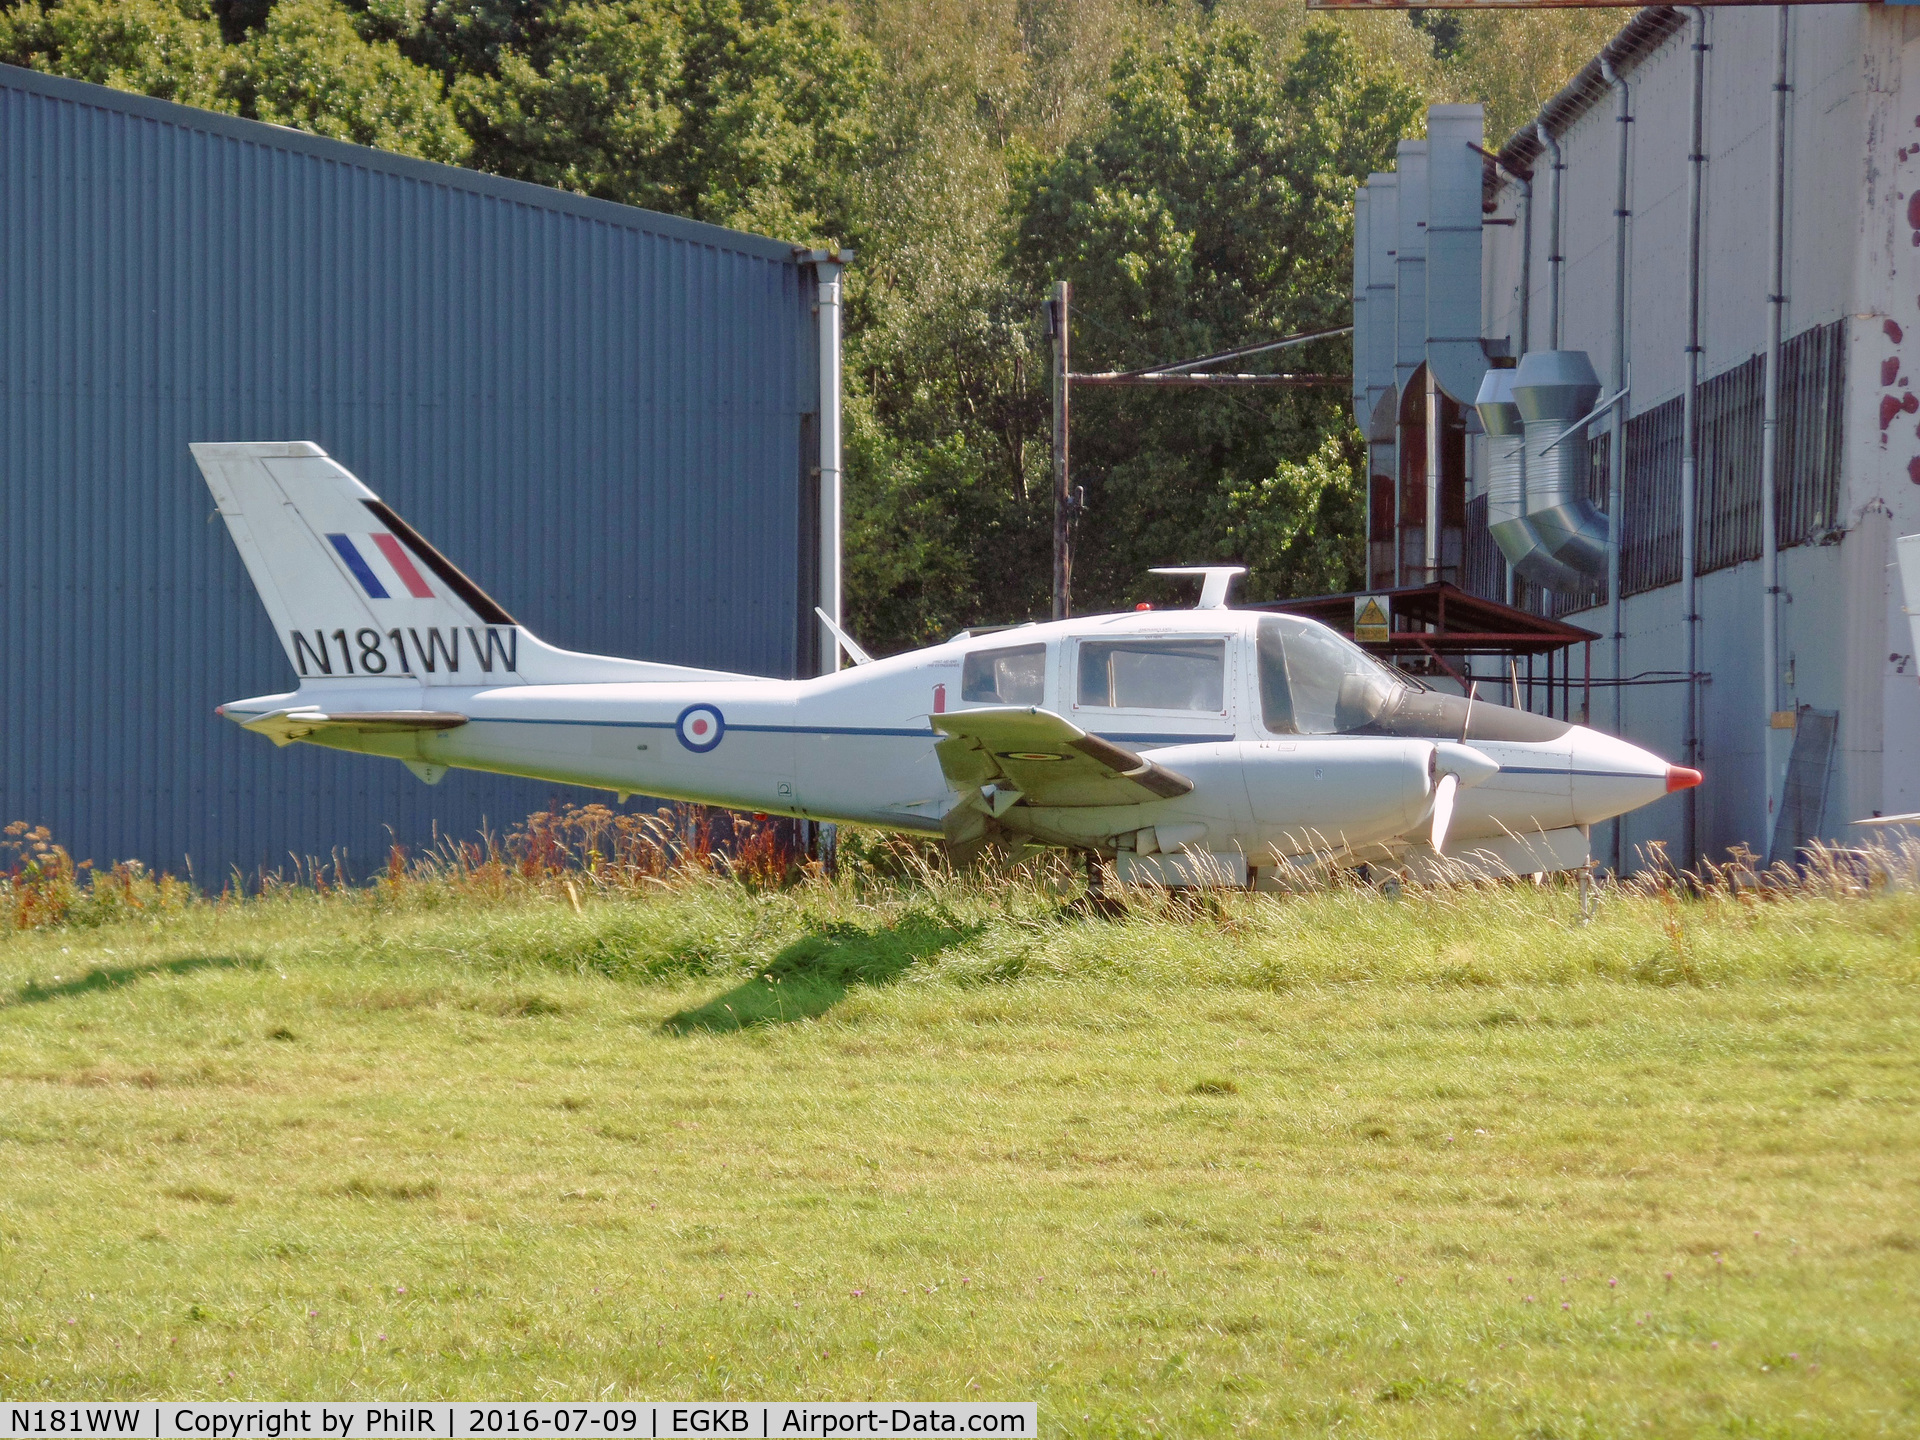 N181WW, 1965 Beagle B-206 Series 1 C/N B018, Ex RAF XS773 and G-BCJF) at Biggin Hill.